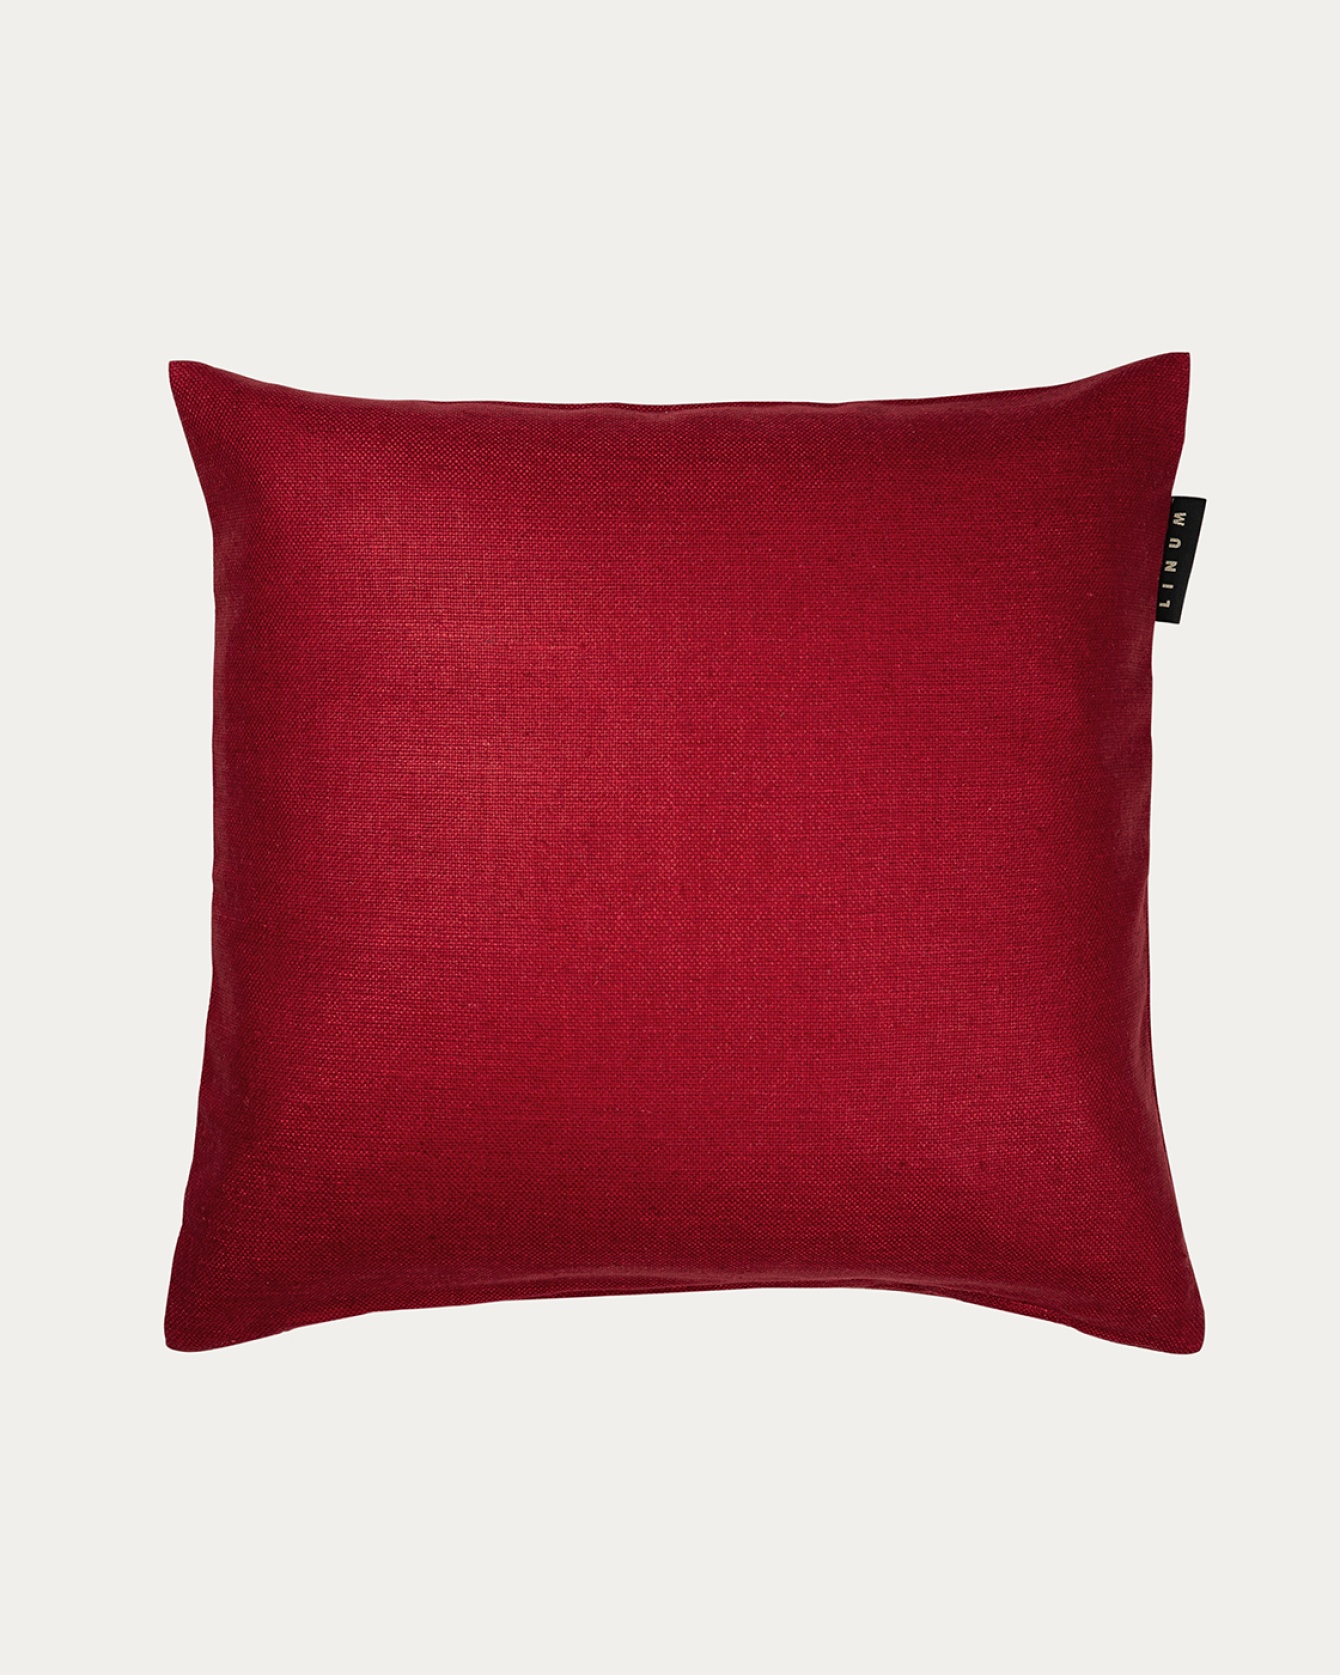 Produktbild rot SETA Kissenhülle aus 100% Rohseide mit schönem Glanz von LINUM DESIGN. Größe 50x50 cm.